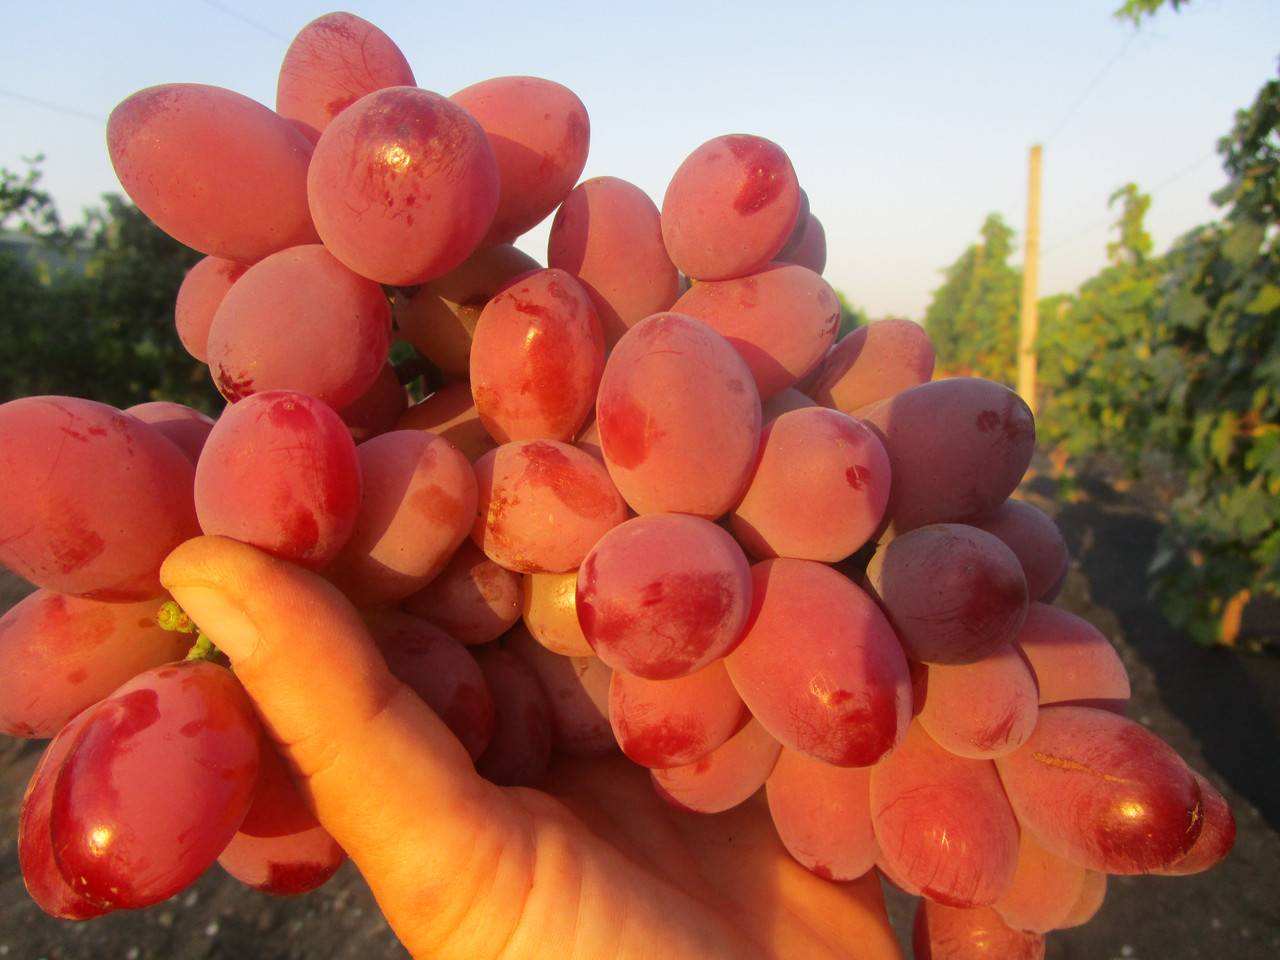 Описание и выращивание винограда сорта Подарок Ирине